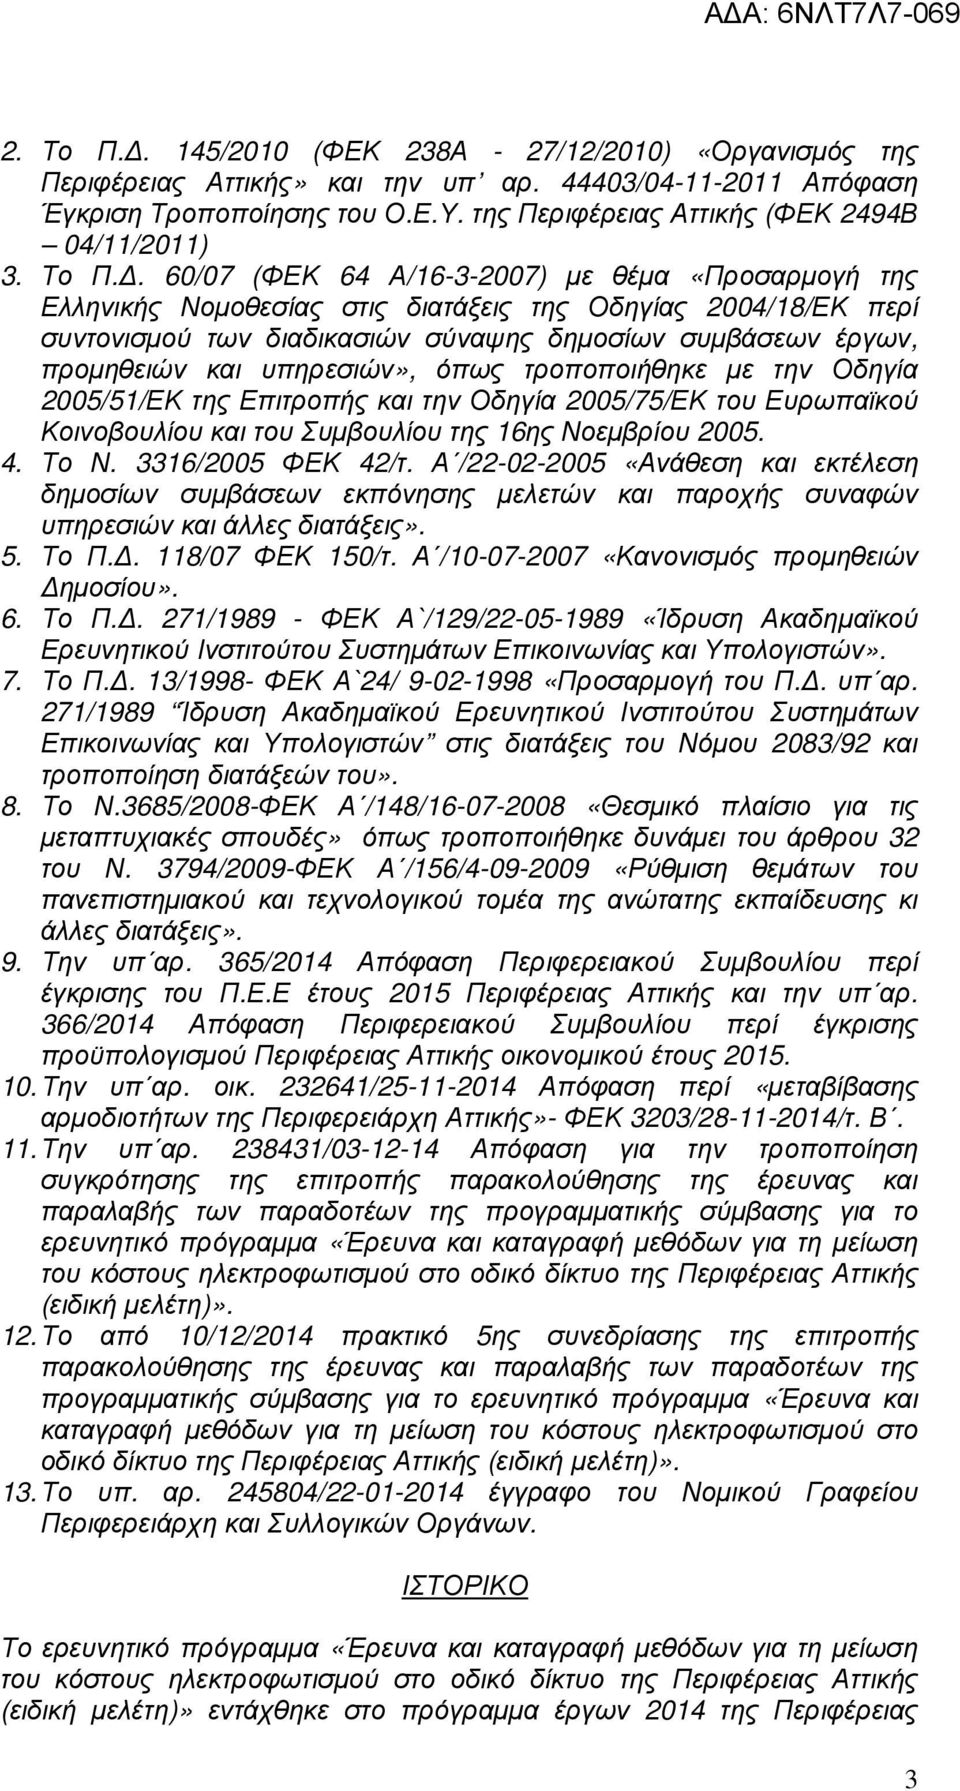 . 60/07 (ΦΕΚ 64 Α/16-3-2007) µε θέµα «Προσαρµογή της Ελληνικής Νοµοθεσίας στις διατάξεις της Οδηγίας 2004/18/ΕΚ περί συντονισµού των διαδικασιών σύναψης δηµοσίων συµβάσεων έργων, προµηθειών και